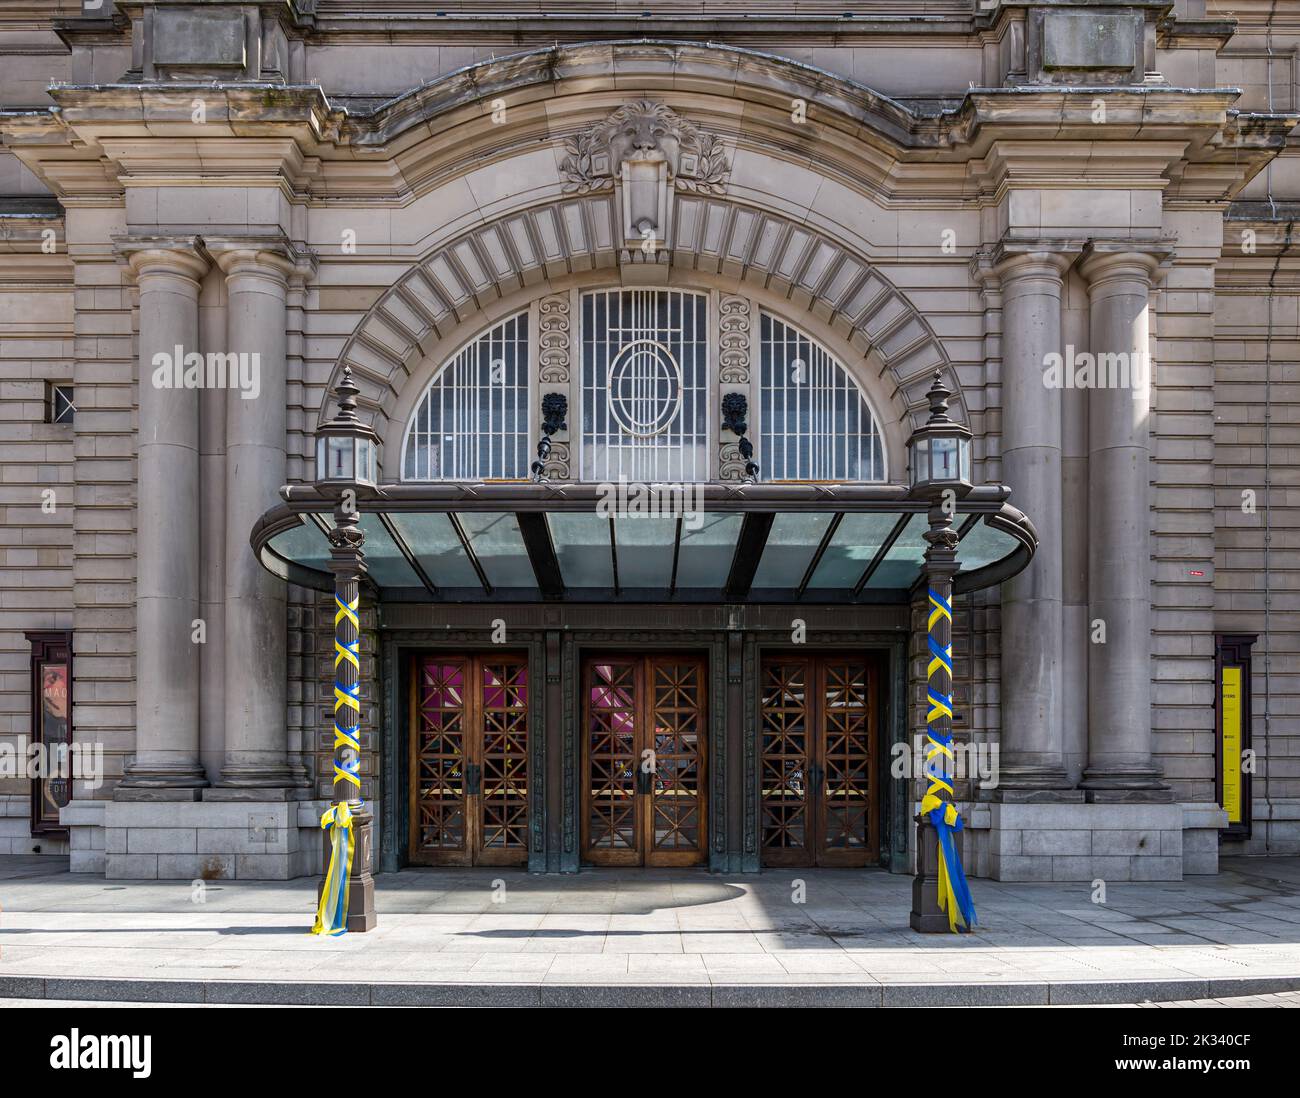 Grand front entrance of Usher Hall with Ukrainian flag coloured ribbons, Edinburgh, Scotland, UK Stock Photo